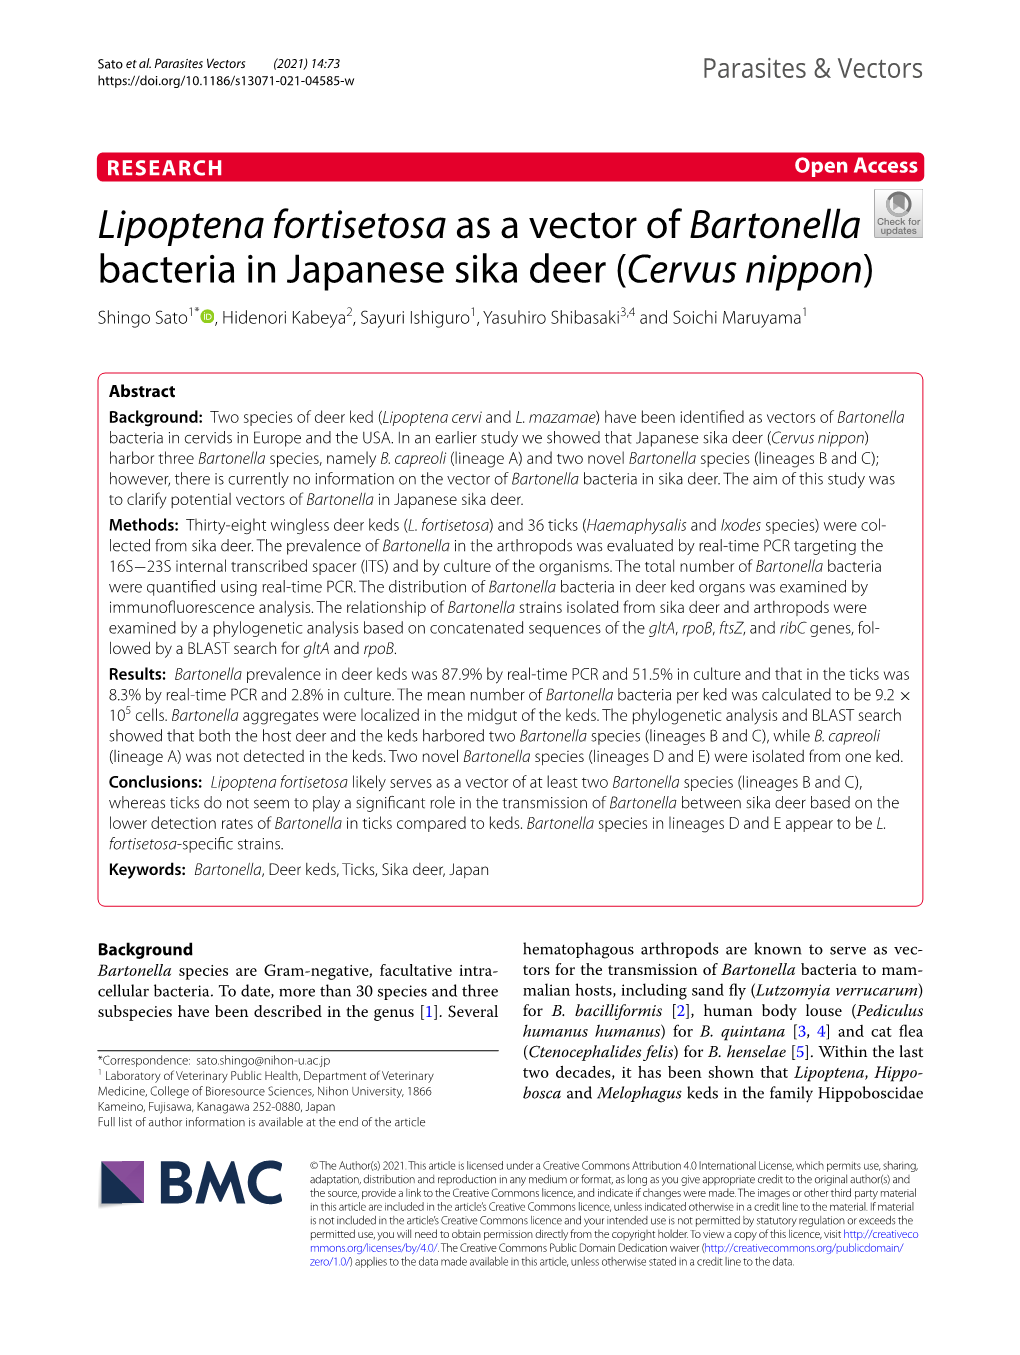 Lipoptena Fortisetosa As a Vector of Bartonella